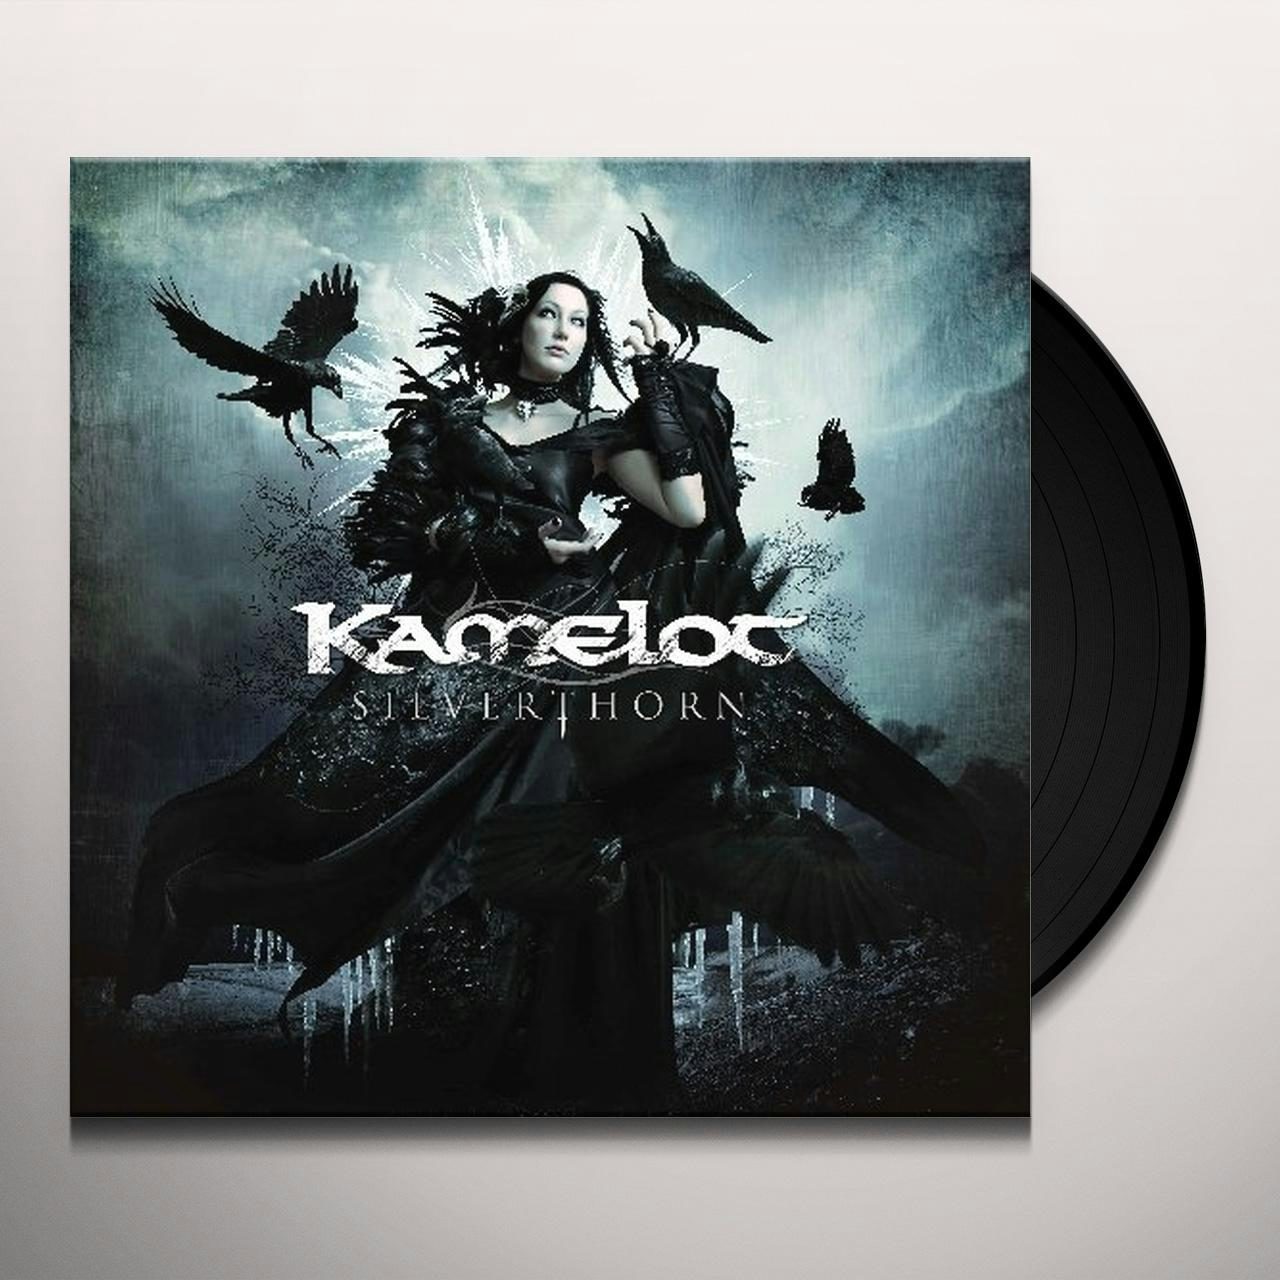 Wallpaper : Kamelot, band, power metal 1280x911 - Garfik666 - 1717071 - HD  Wallpapers - WallHere